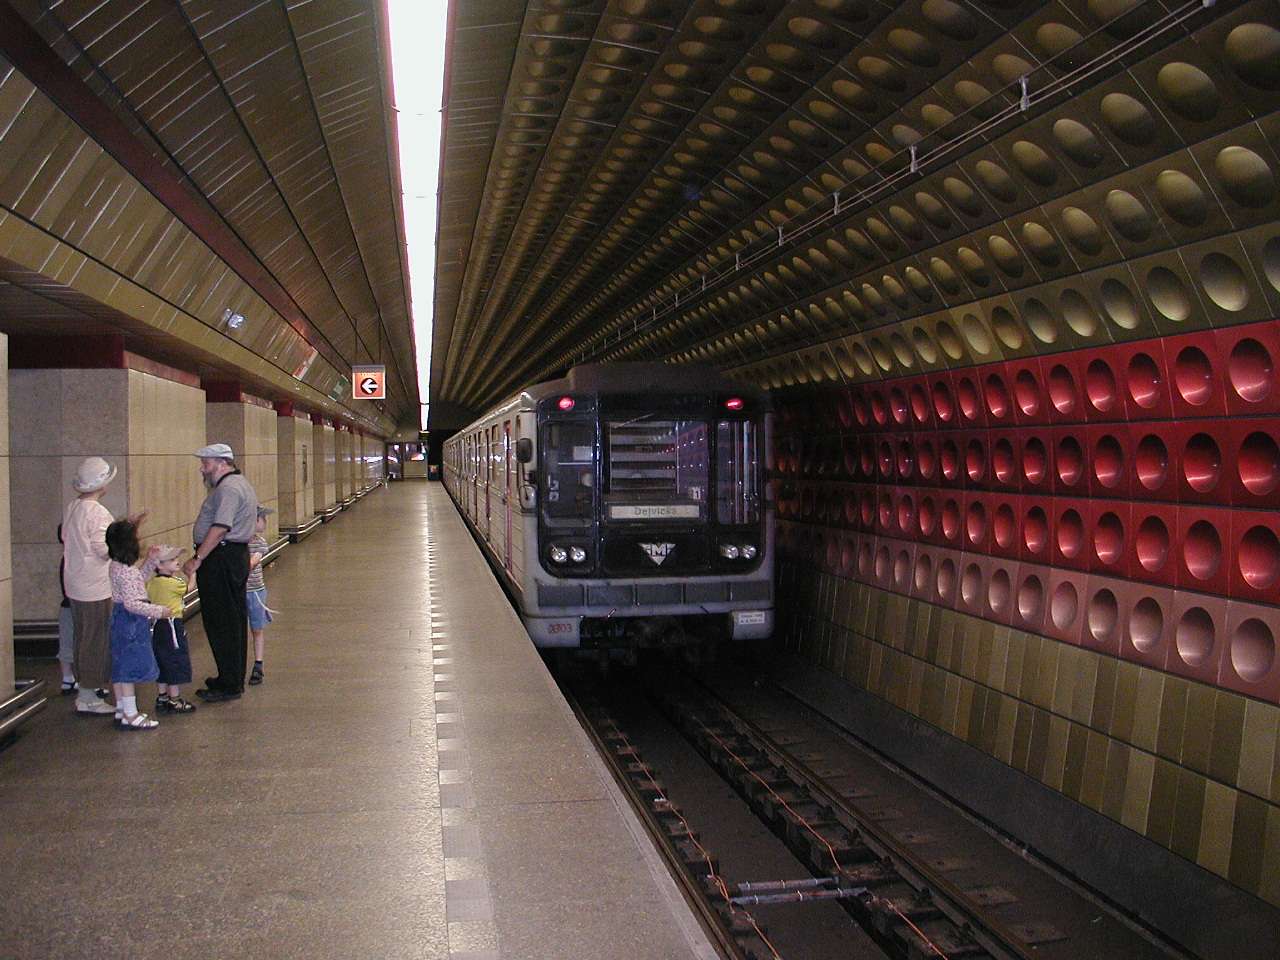 プラハの地下鉄
クリックすると写真を拡大できます